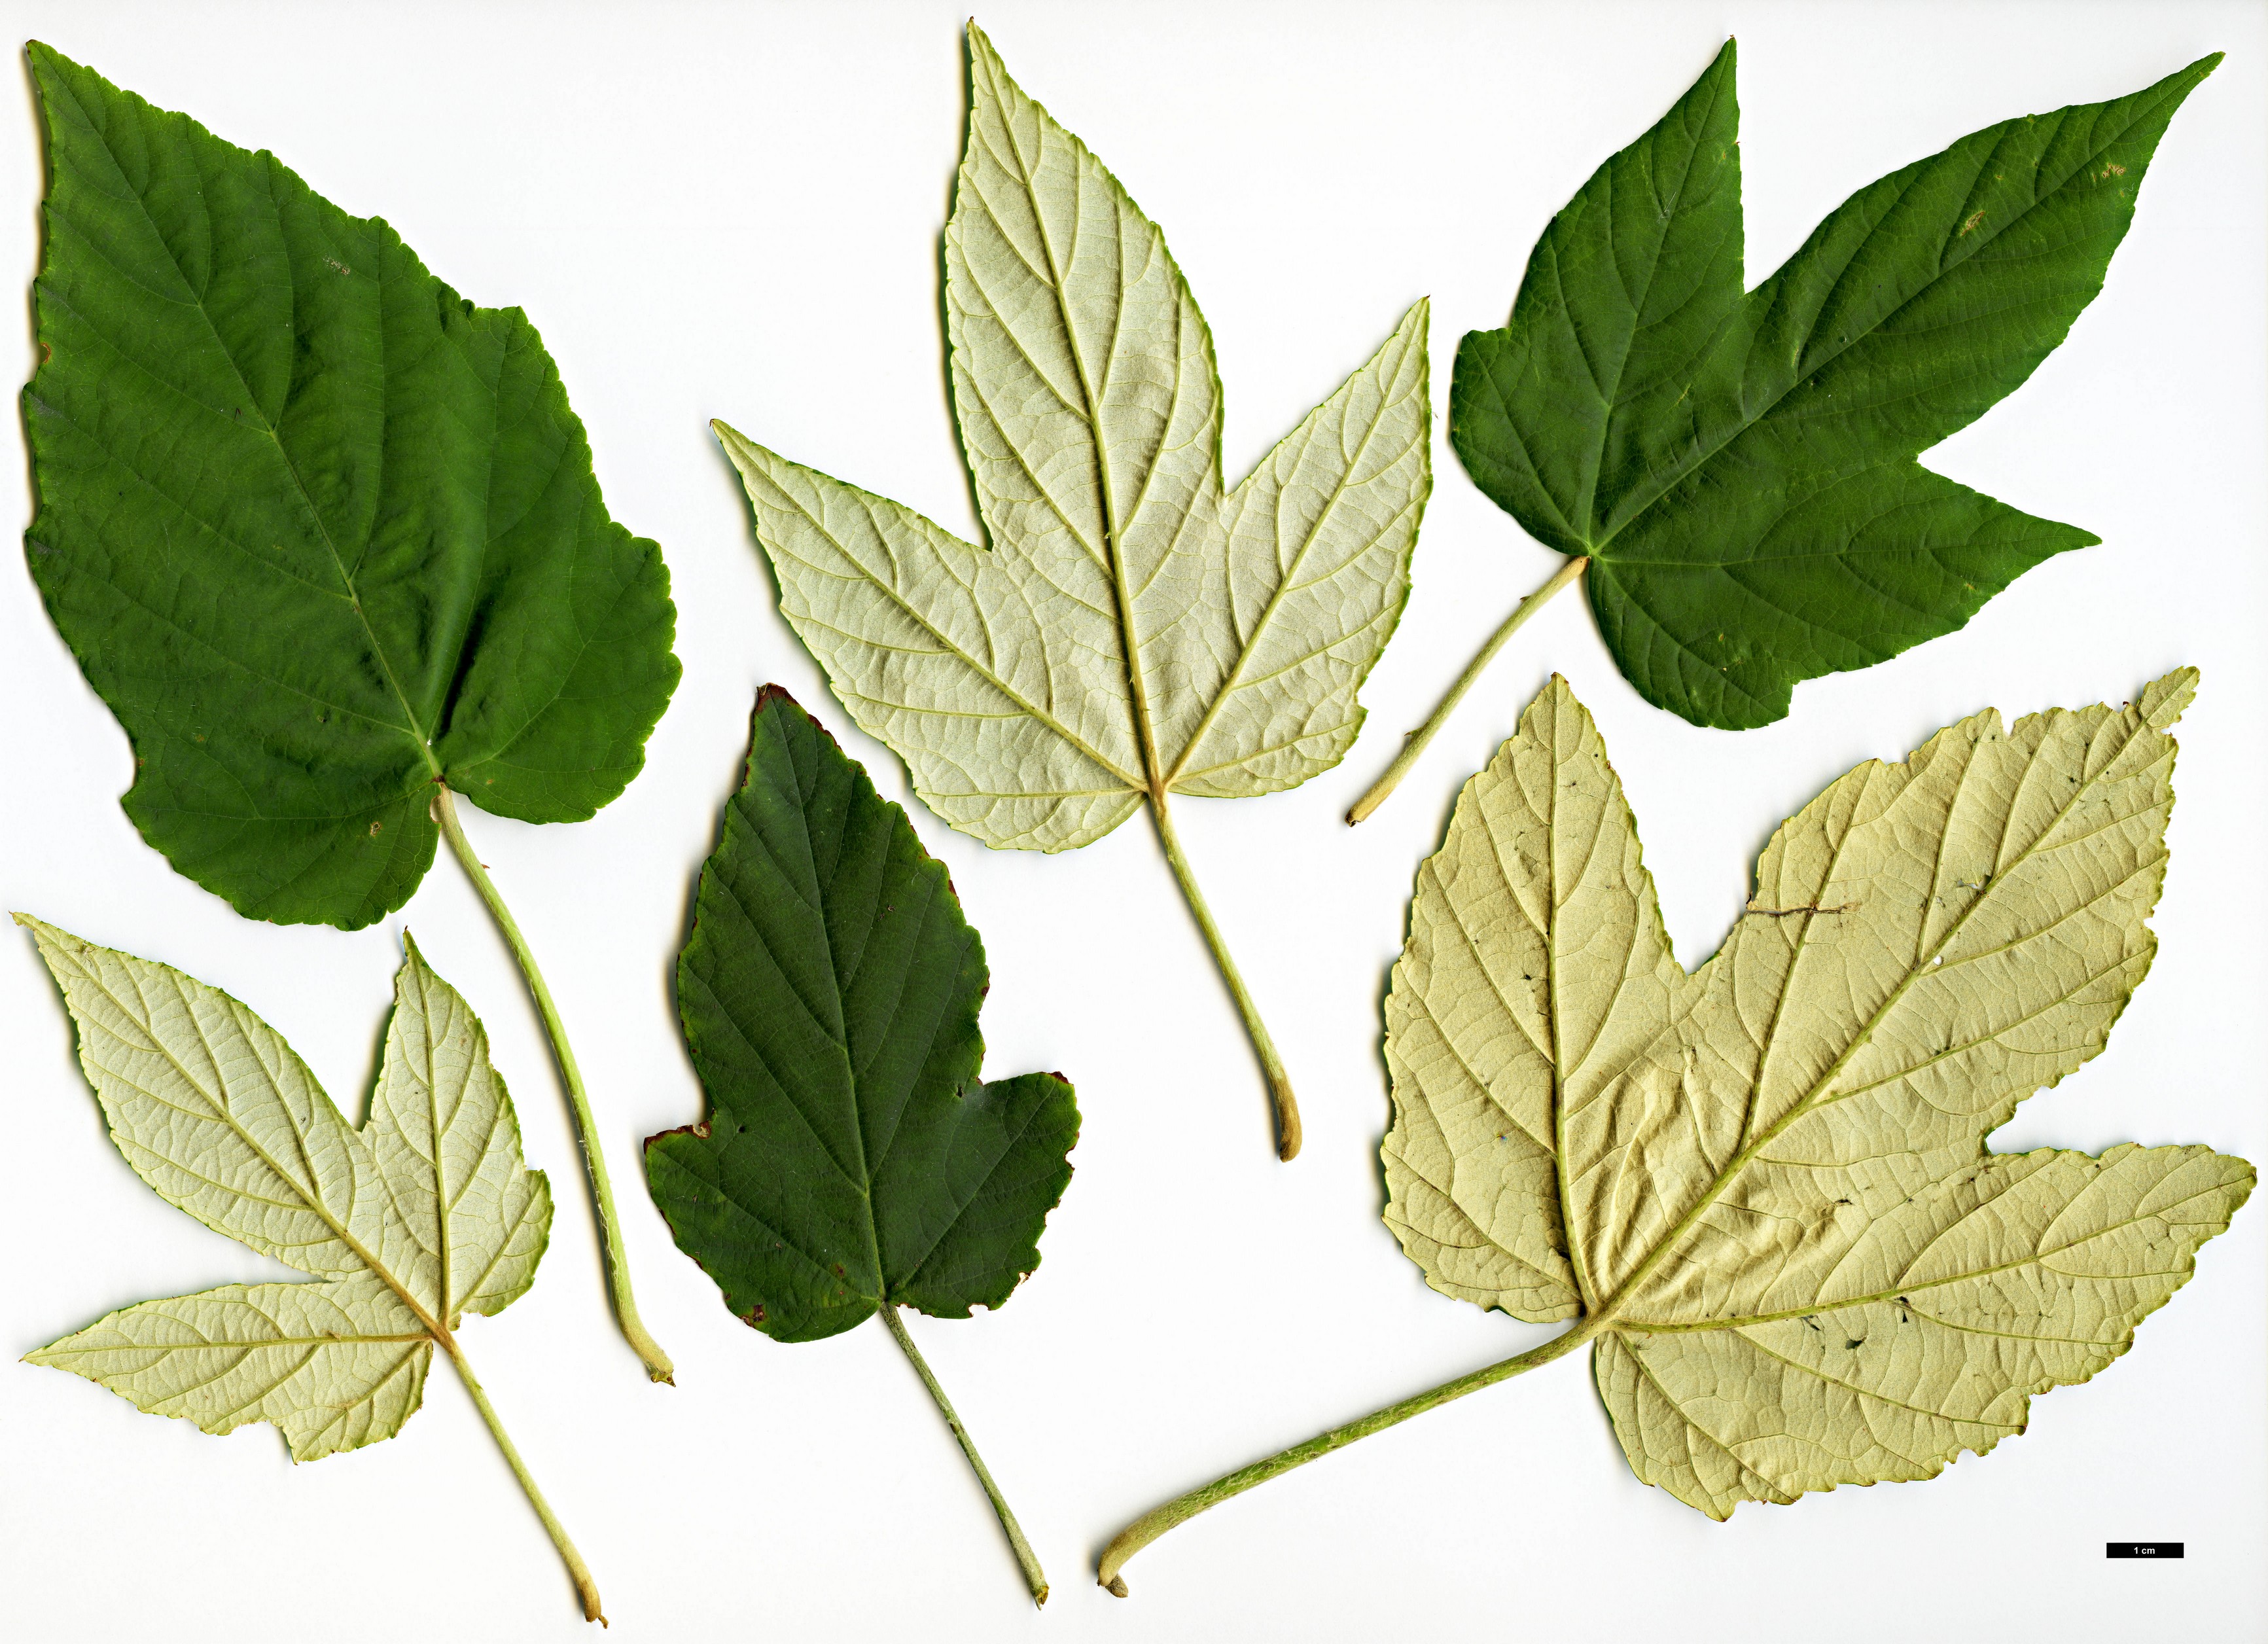 High resolution image: Family: Rosaceae - Genus: Rubus - Taxon: flagelliflorus